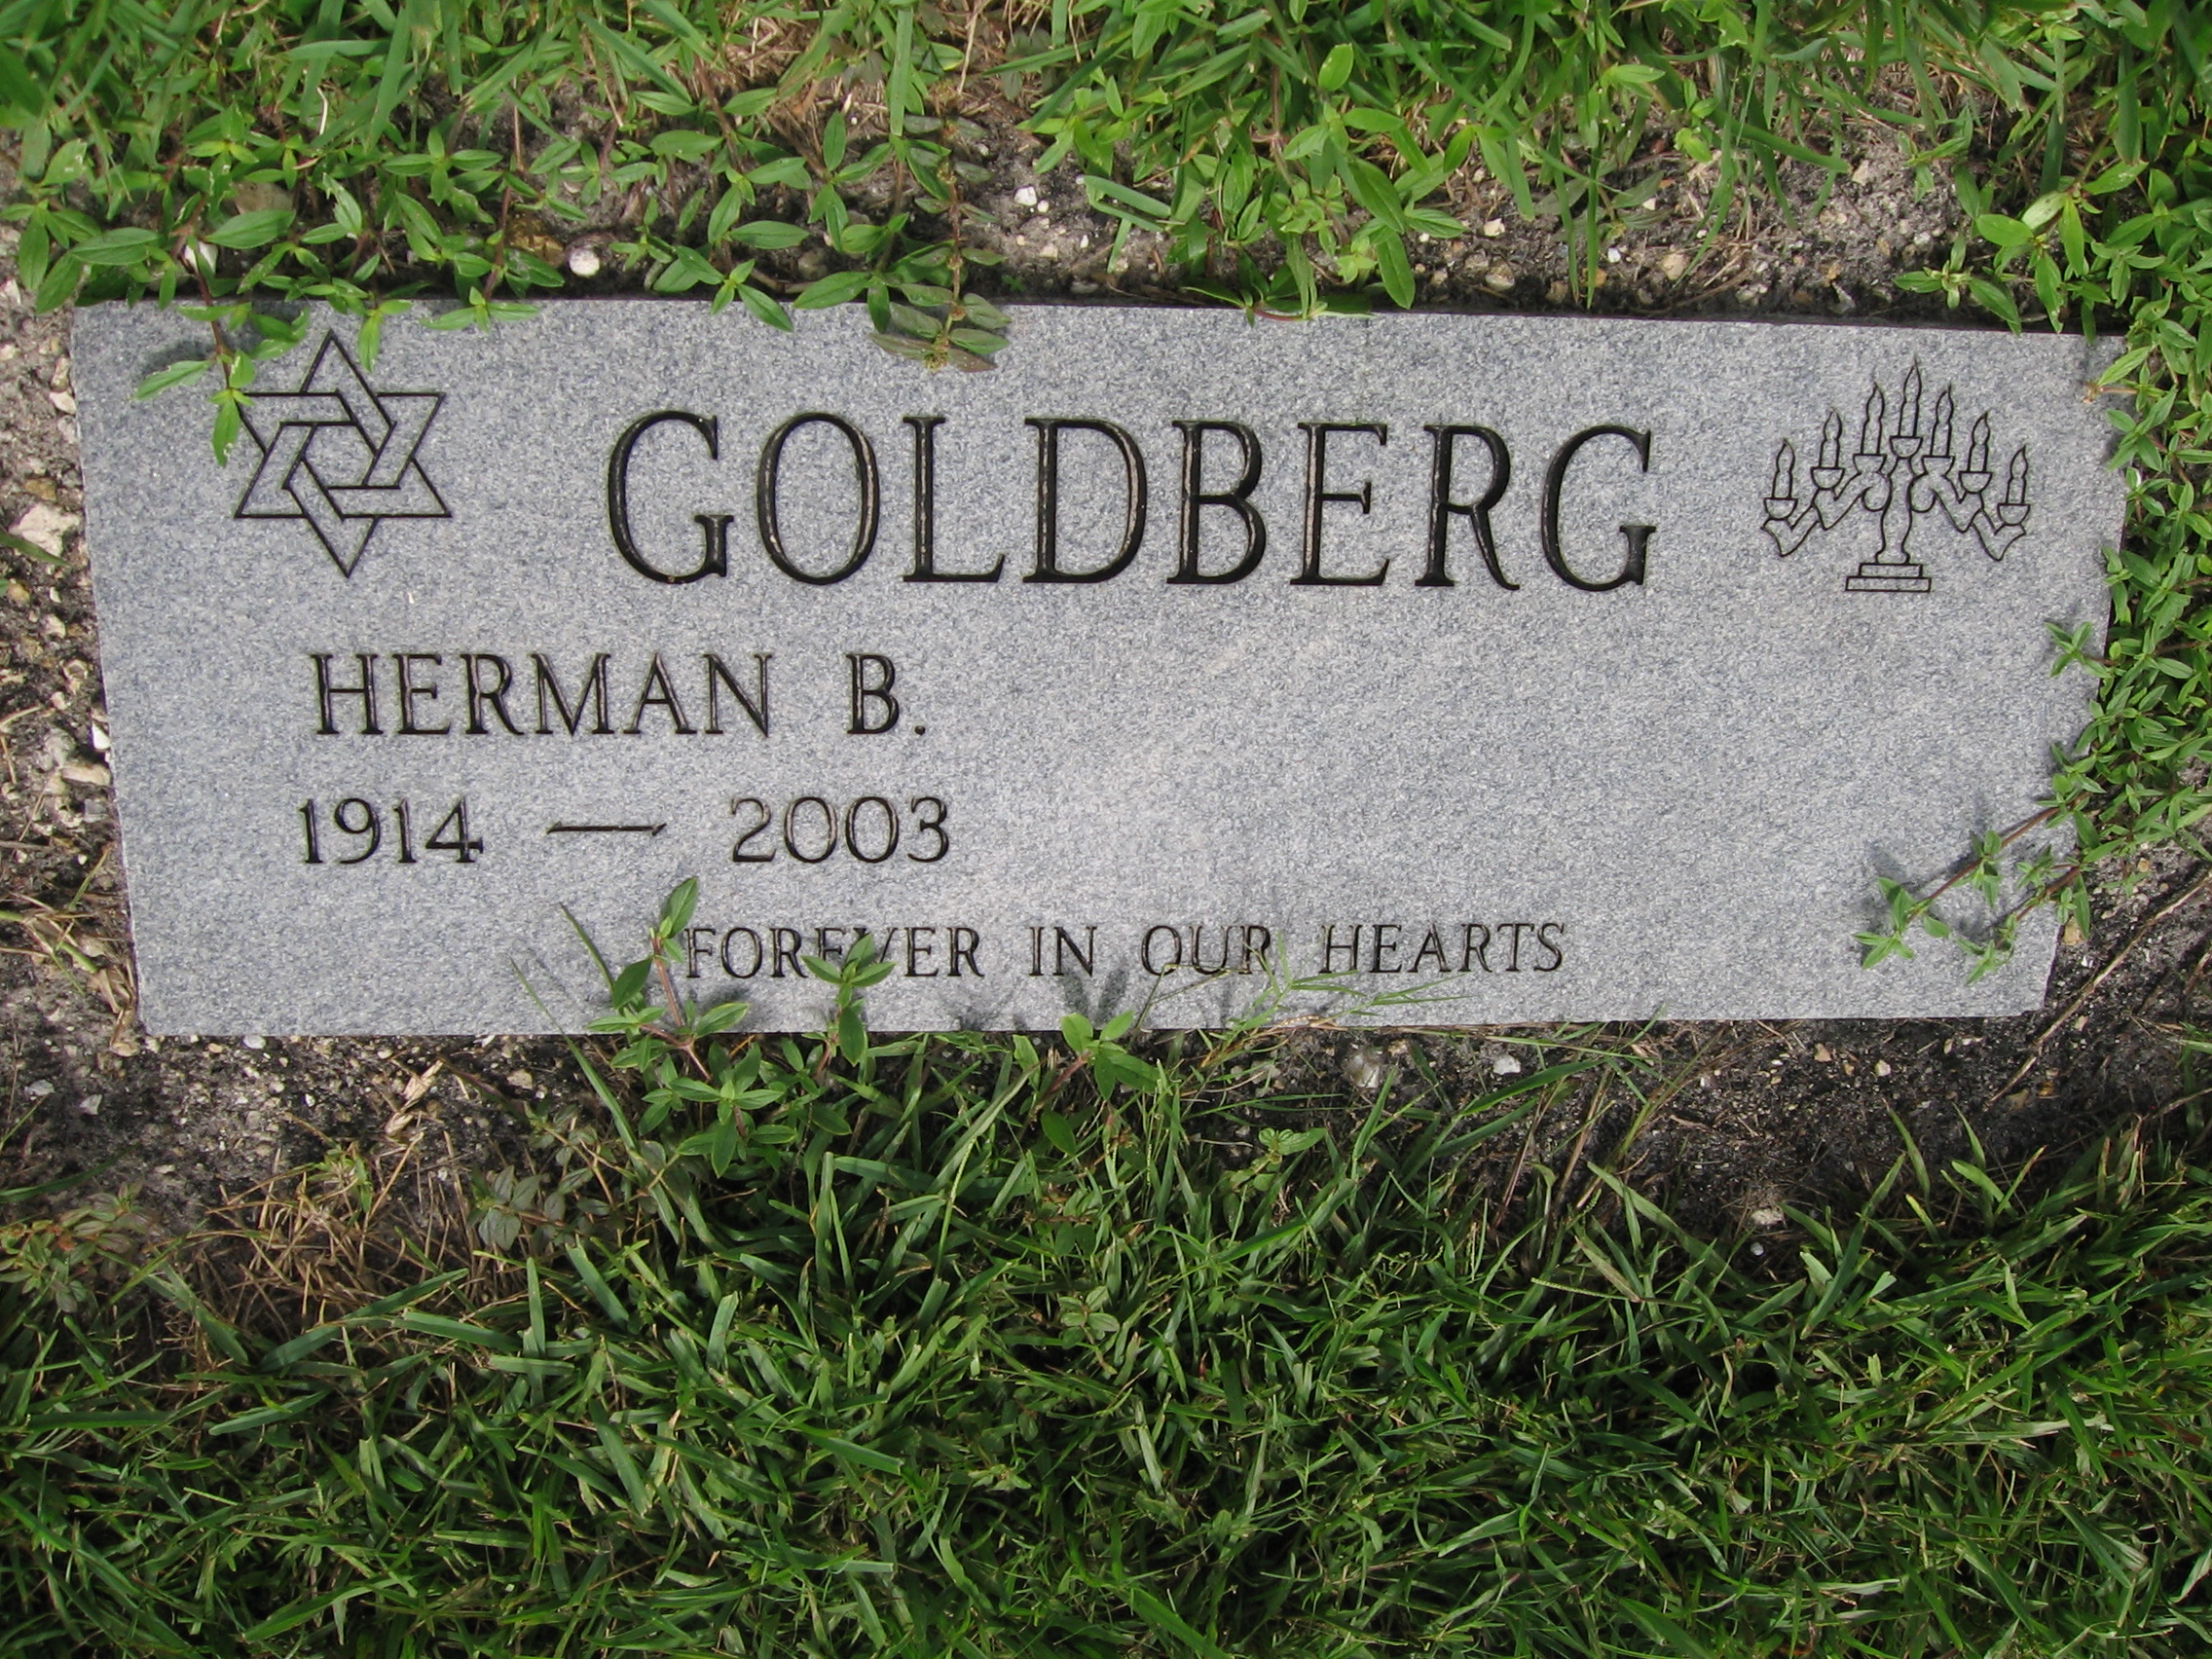 Herman B Goldberg